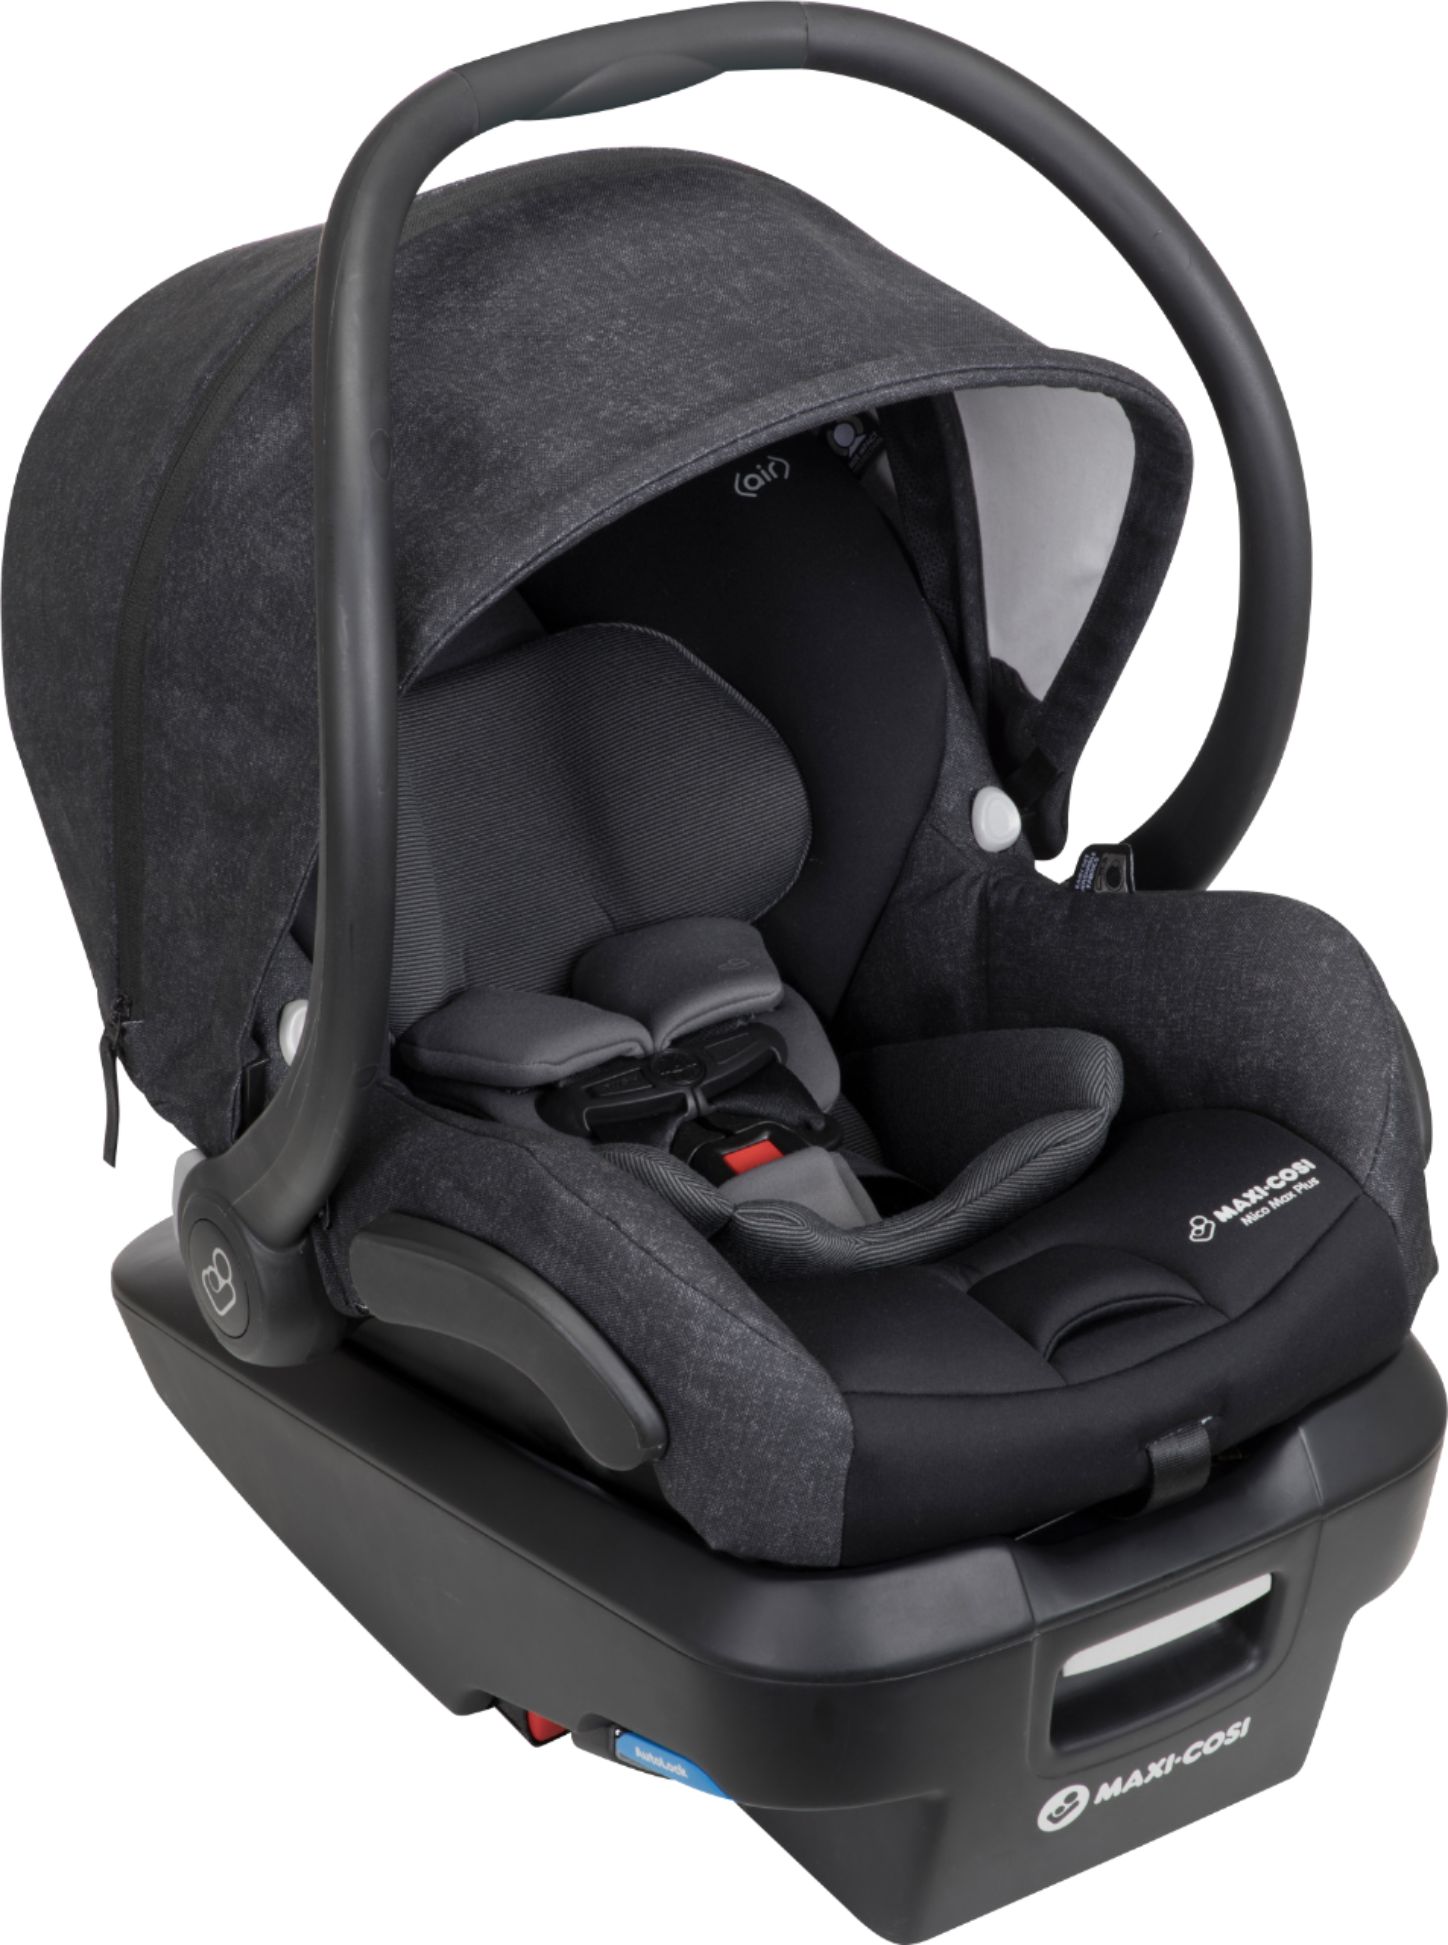 Maxi Cosi Mico Max Plus Infant Car Seat Black Ic306etk Best - Infant Car Seat Weight Limit Maxi Cosi